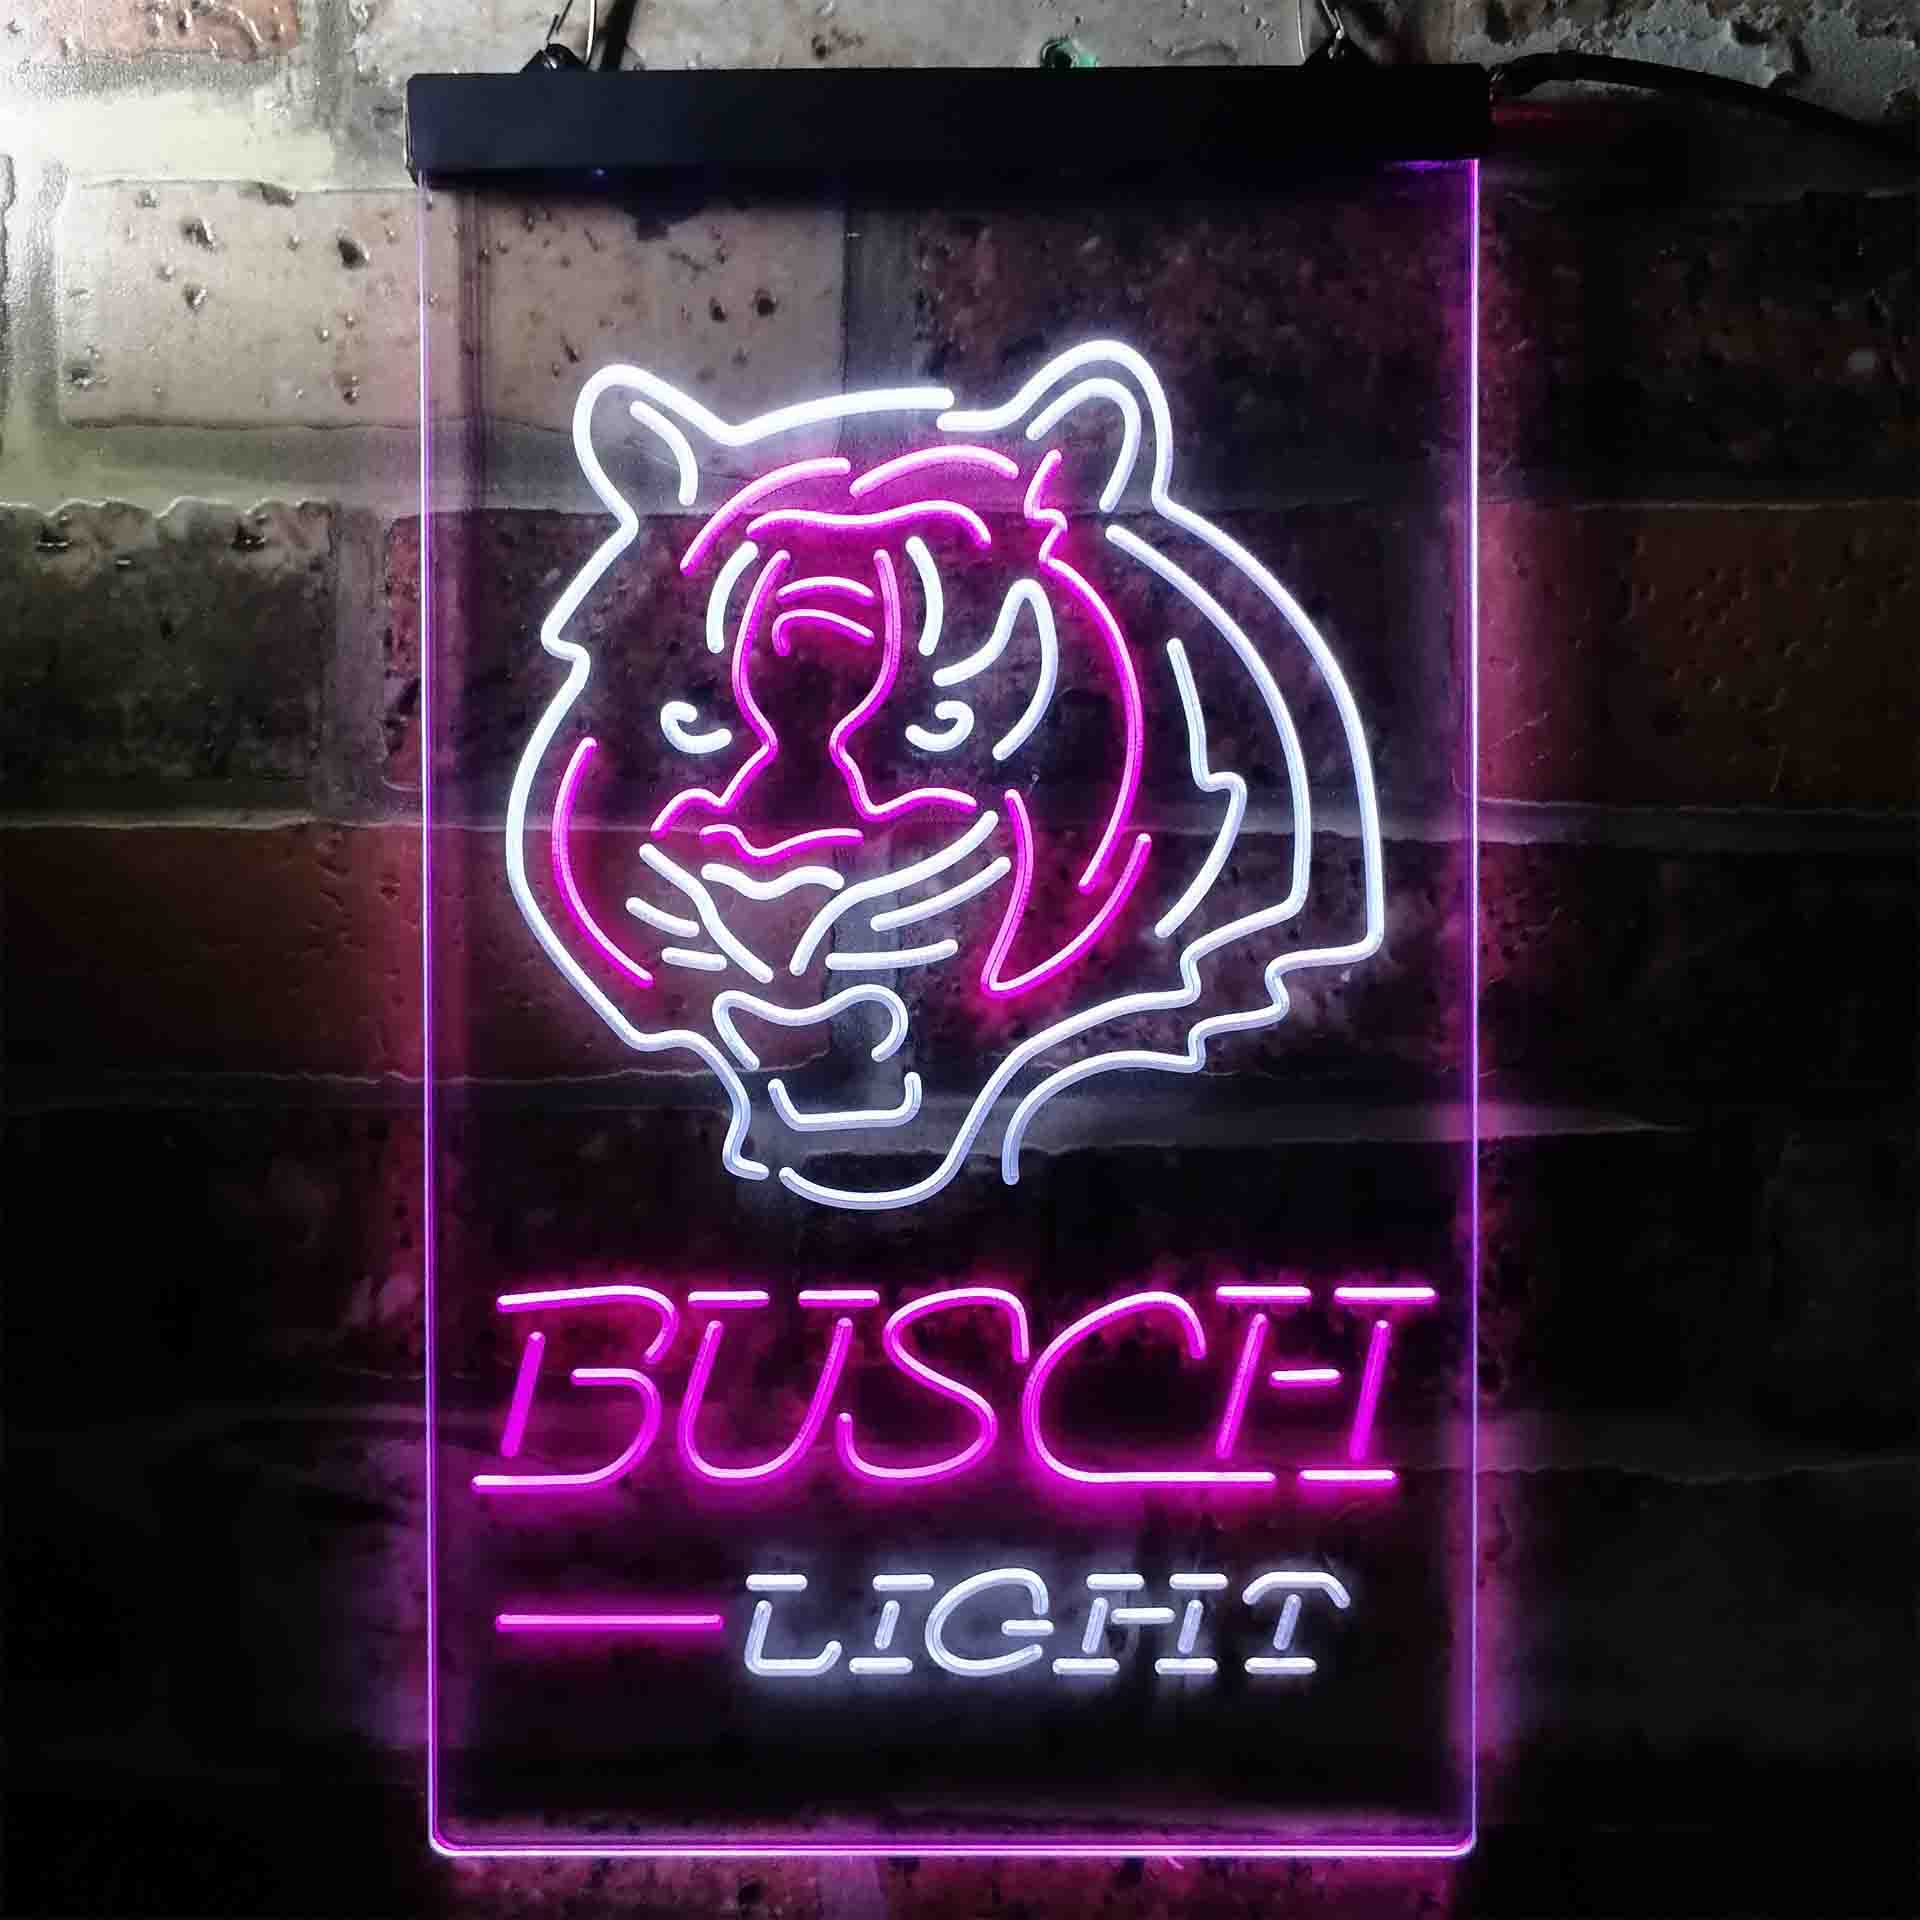 Busch Light Cincinnati Bengals Neon-Like LED Sign